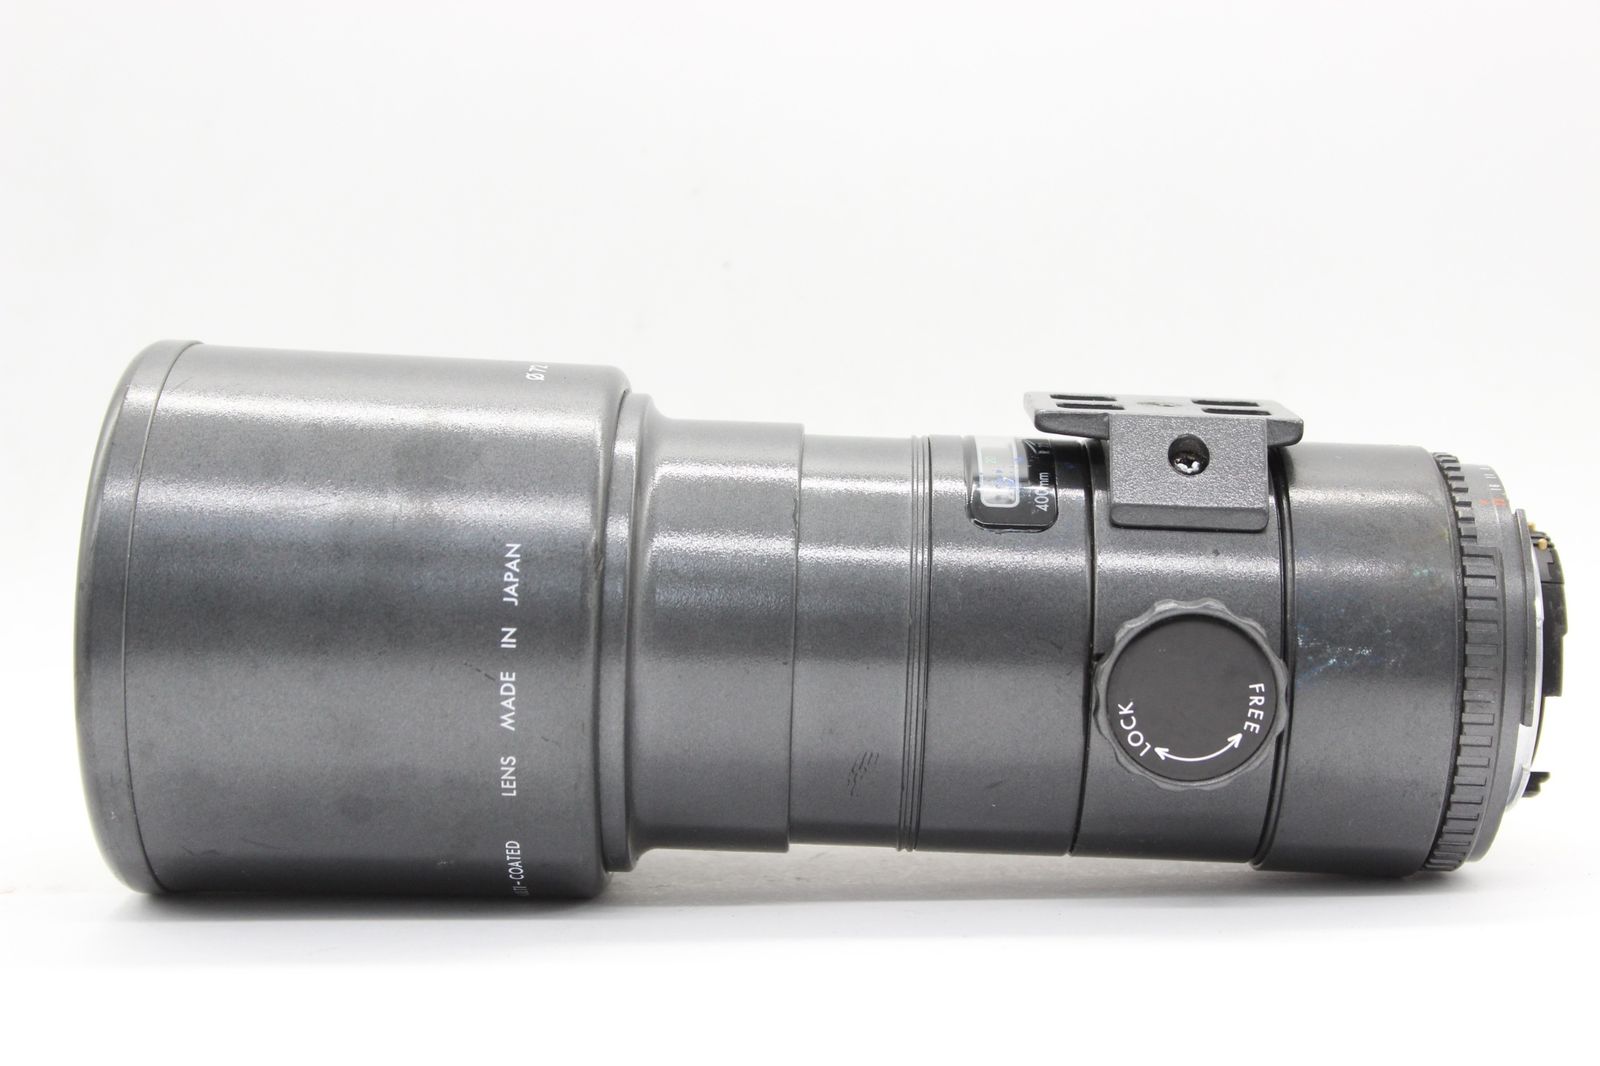 【返品保証】 シグマ Sigma AF Tele 400mm F5.6 Multi-Coated 前後キャップ付き ニコンマウント レンズ s6561